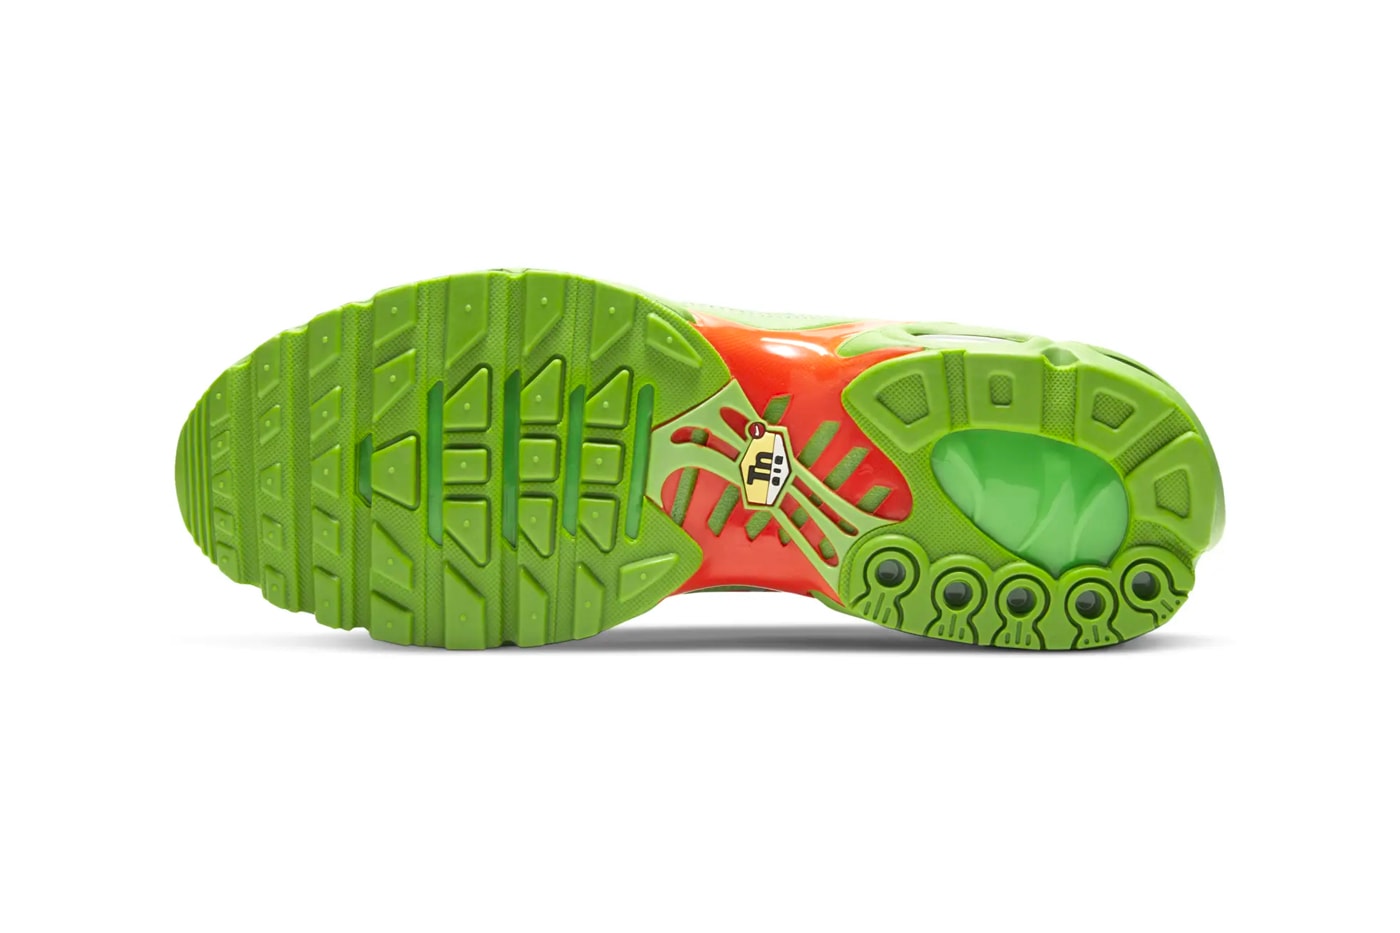 x Nike Air Max Plus TN "Fire & "Mean Green" Re-Release | Hypebeast